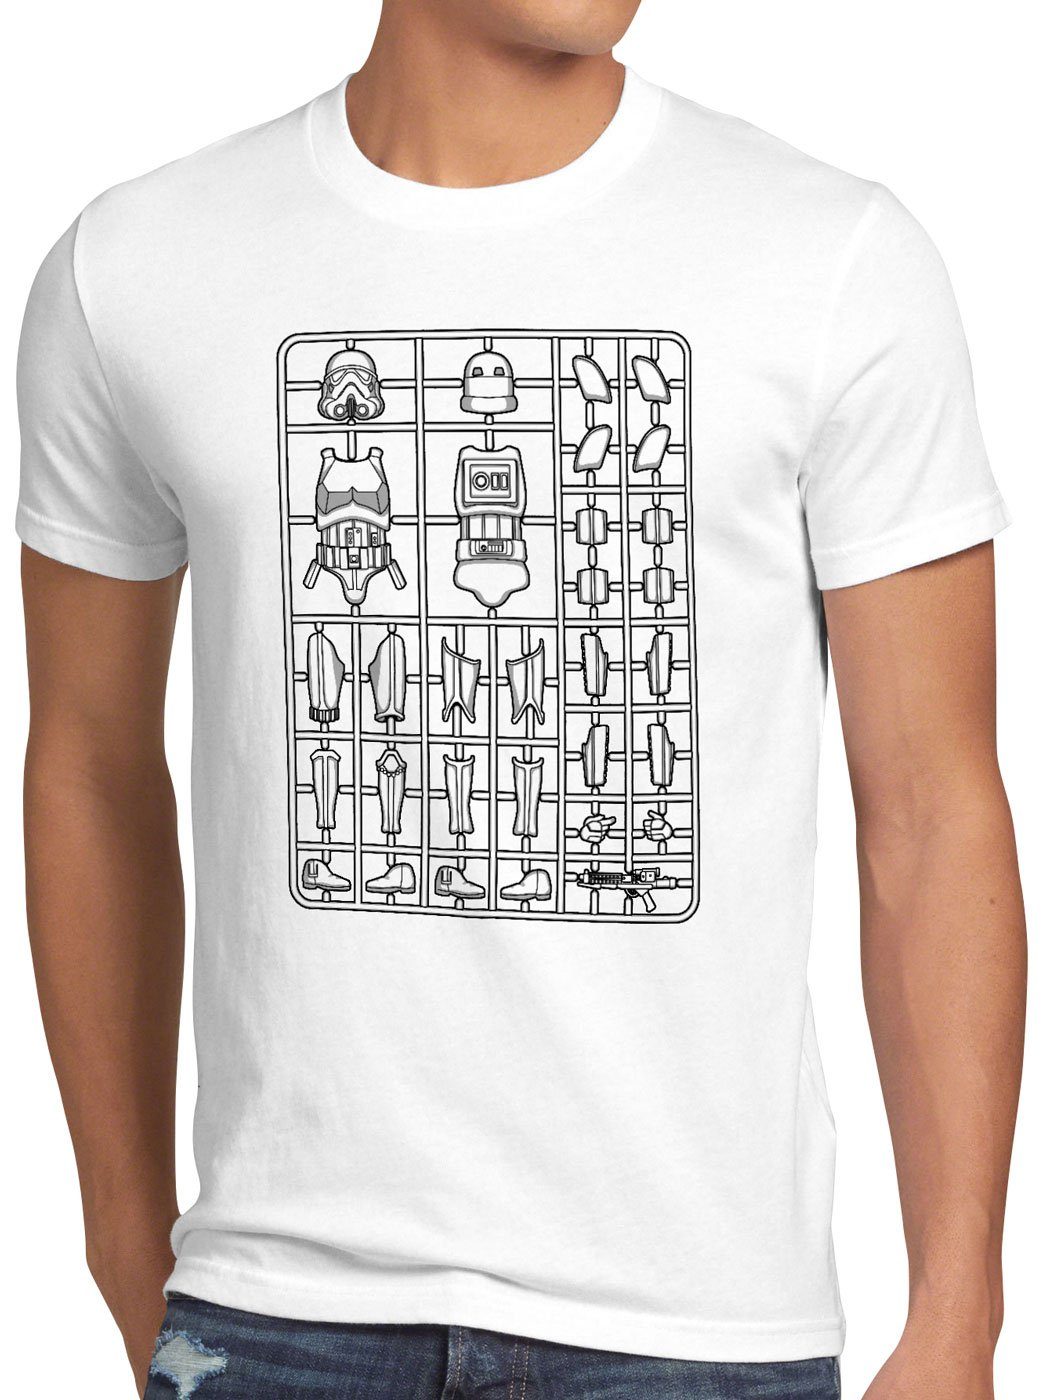 imperium T-Shirt Herren weiß Bausatz style3 sturmtruppen Stormtrooper Print-Shirt